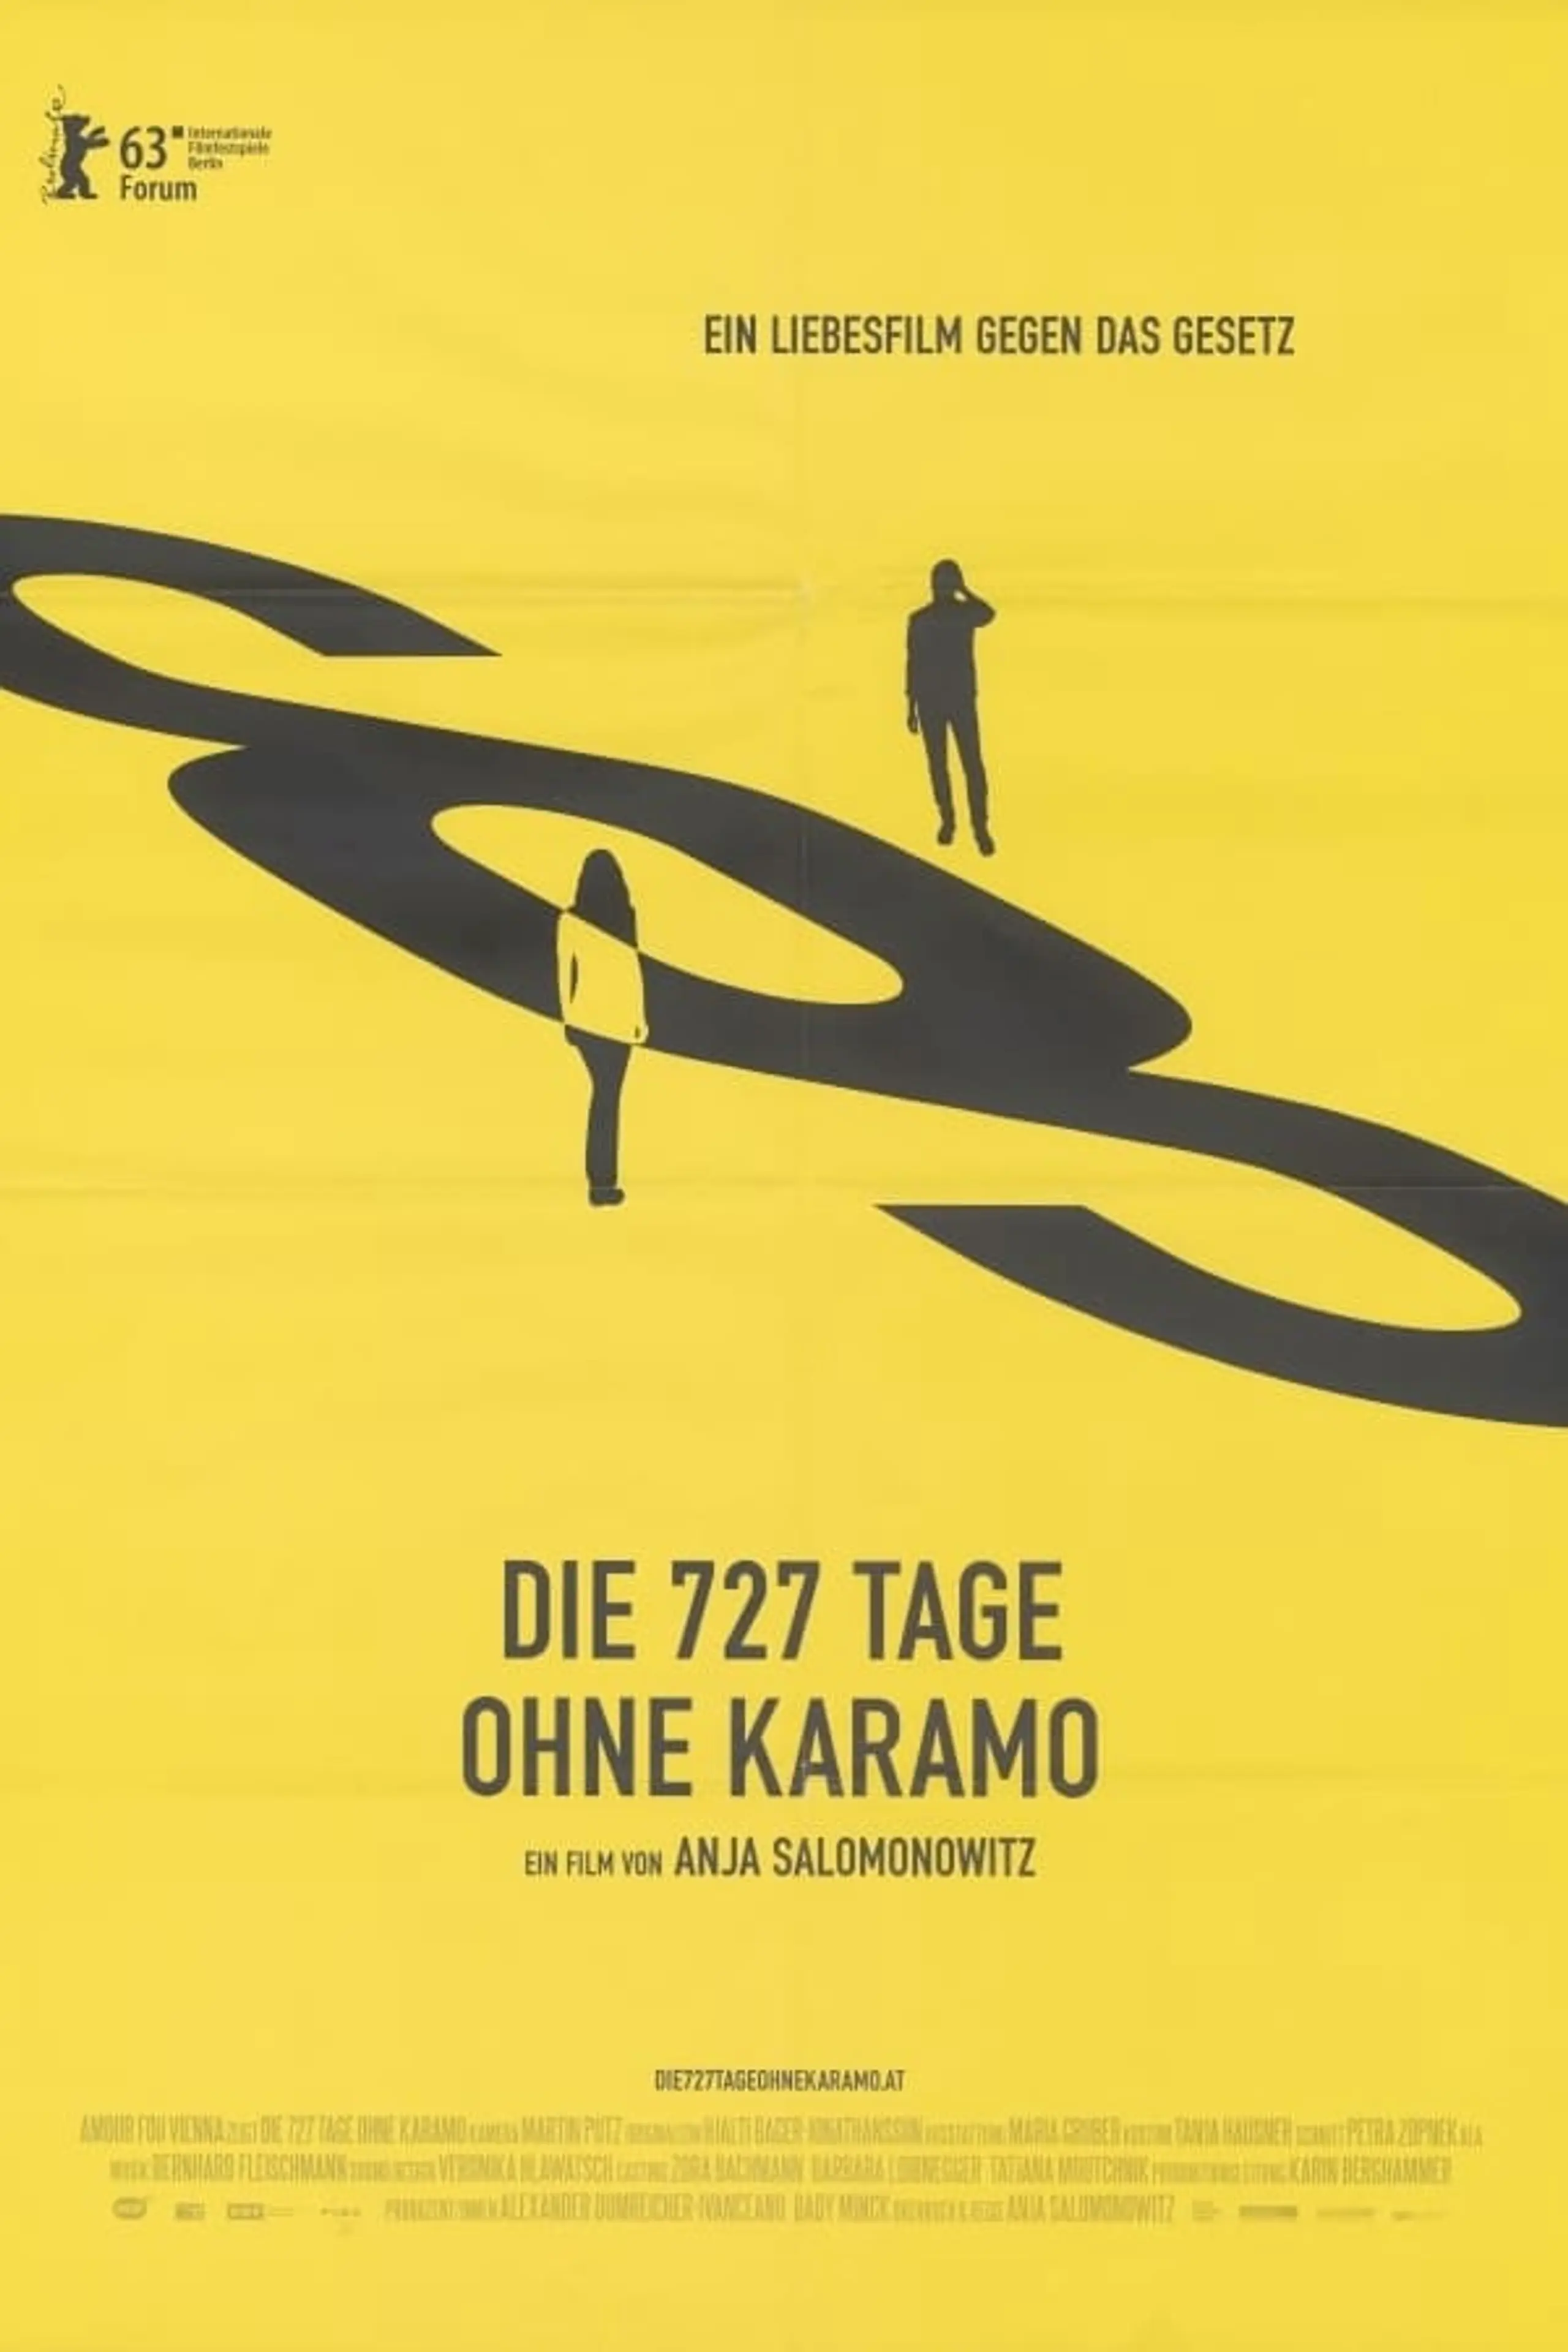 Die 727 Tage ohne Karamo - Ein Liebesfilm gegen das Gesetz